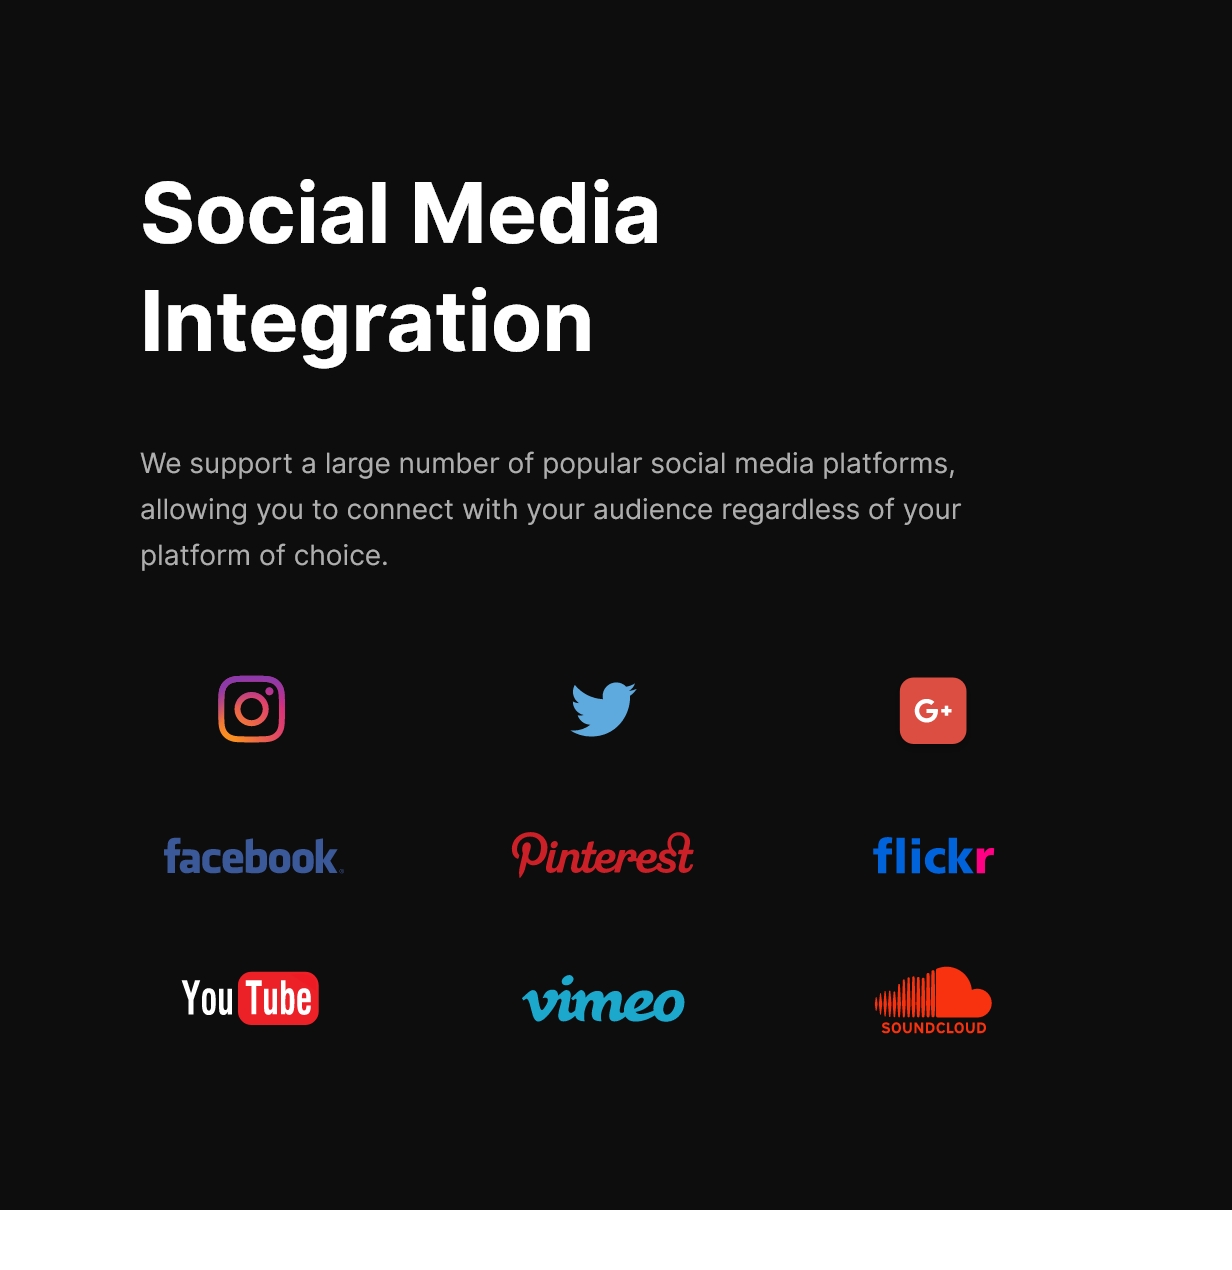 Social media integration and 9 icons of social media.